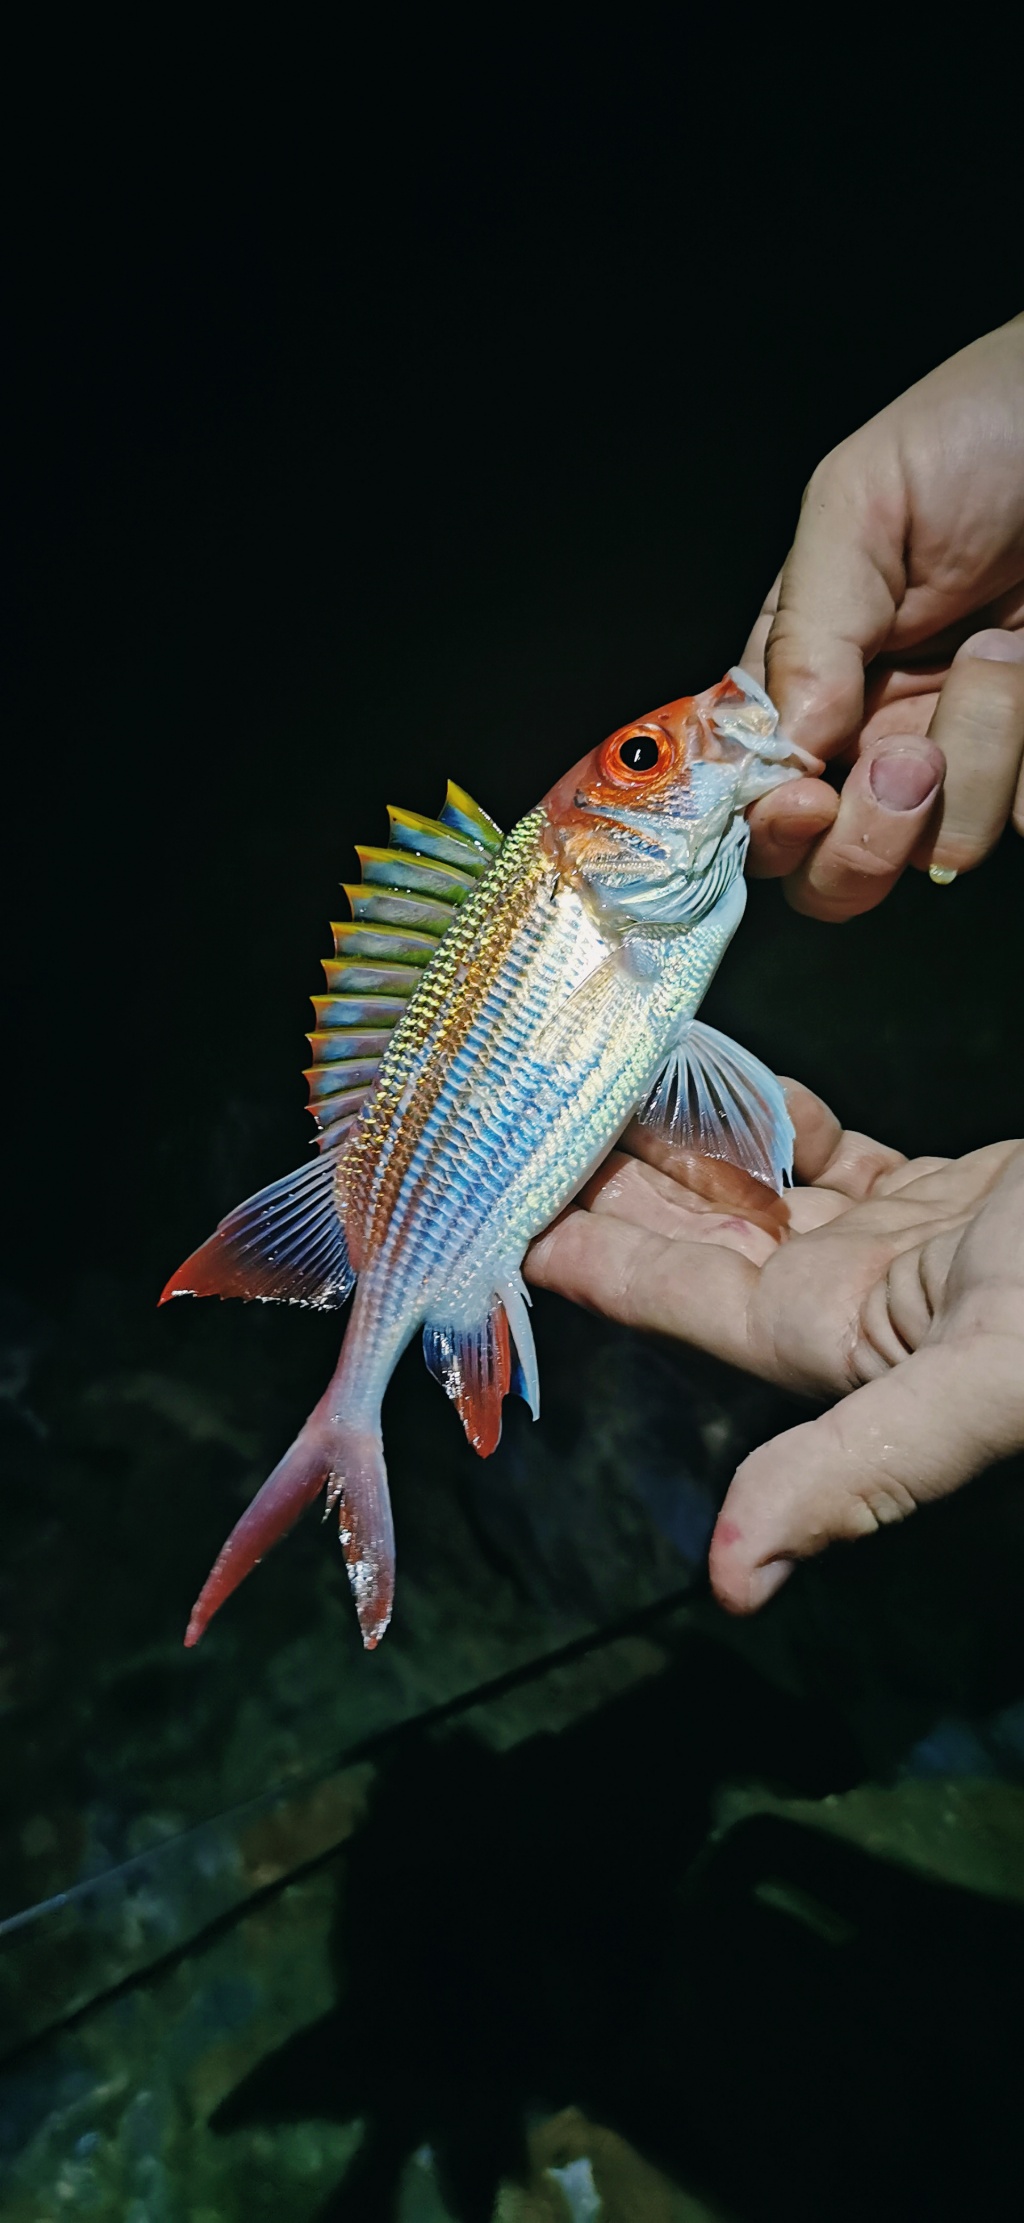 Стас из «Киев» просит распознать рыбу по фото